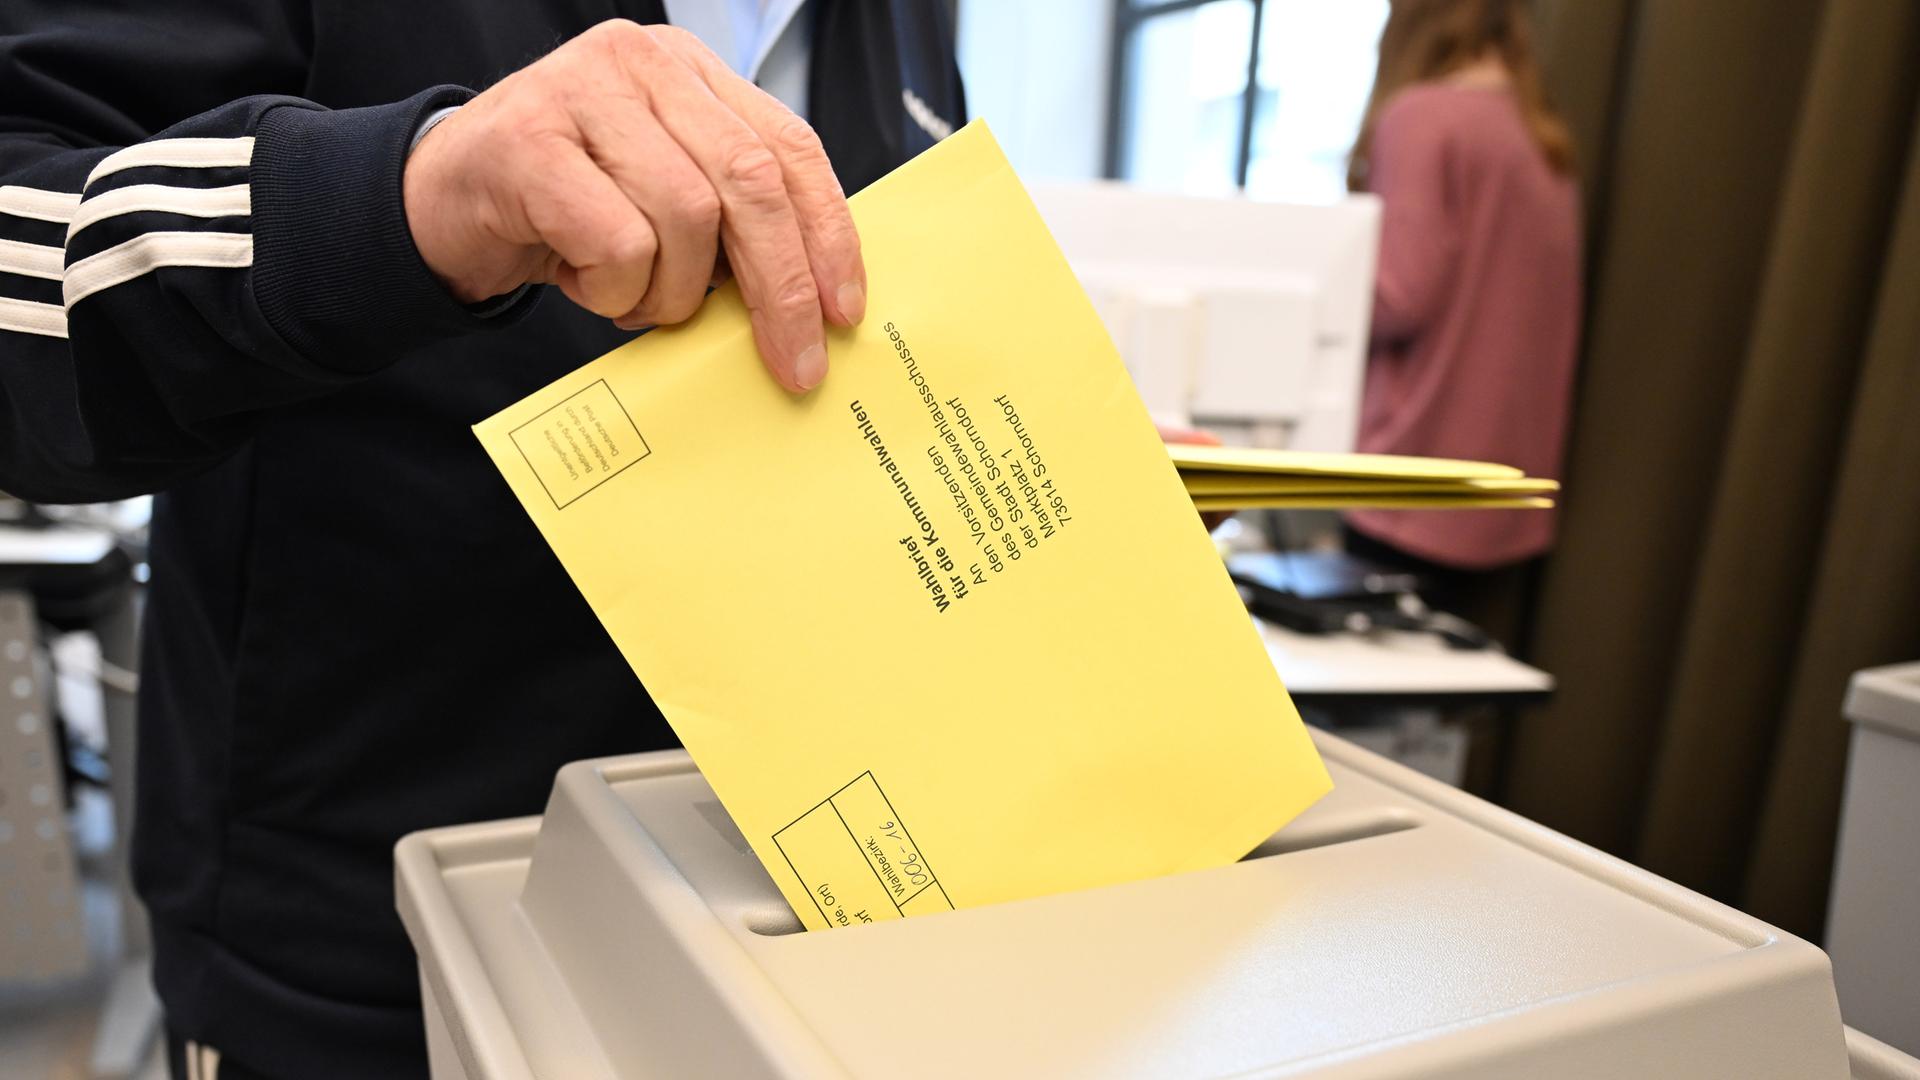 Ein Wahlbrief mit einem Stimmzettel für die Kommunalwahl wird im Rathaus in einem Wahllokal für die Briefwahl in eine Wahlurne gesteckt.